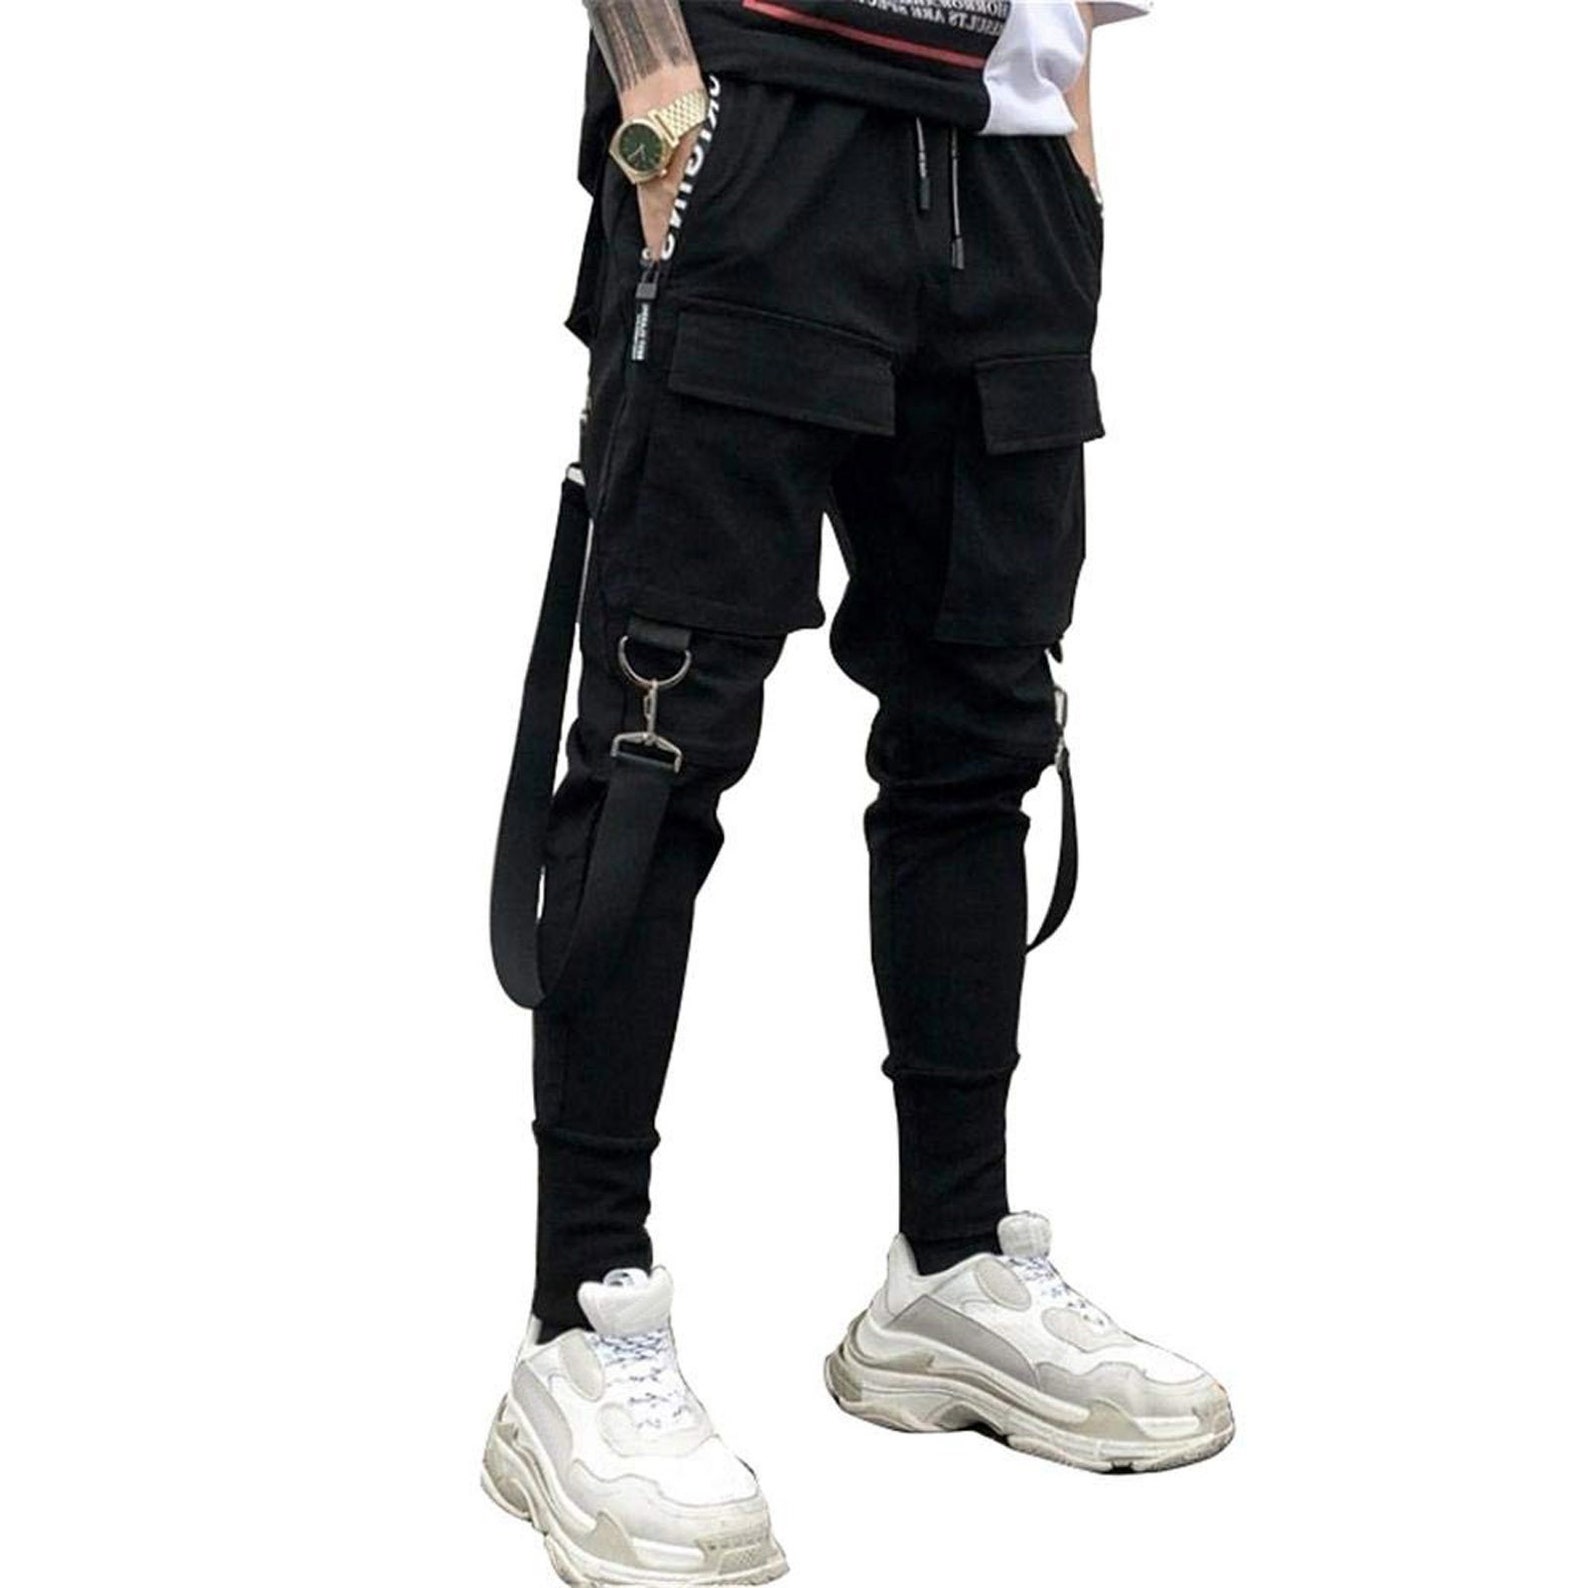 Cyberpunk Techwear Pants with Straps Men Streetwear Black Hip | Etsy